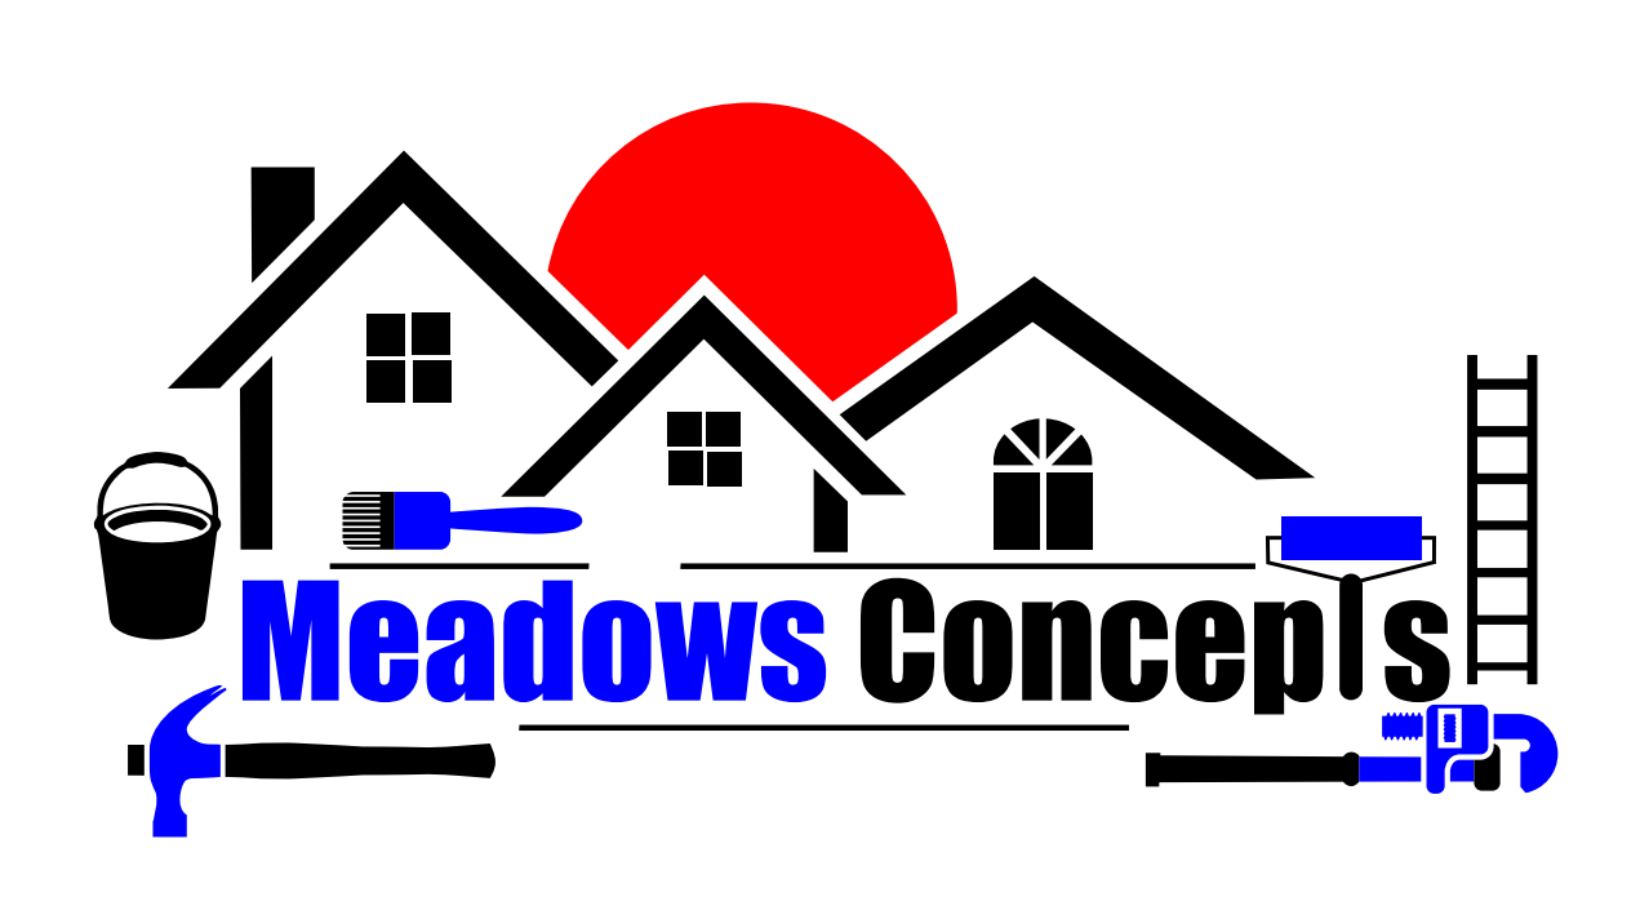 Meadows Concepts, LLC